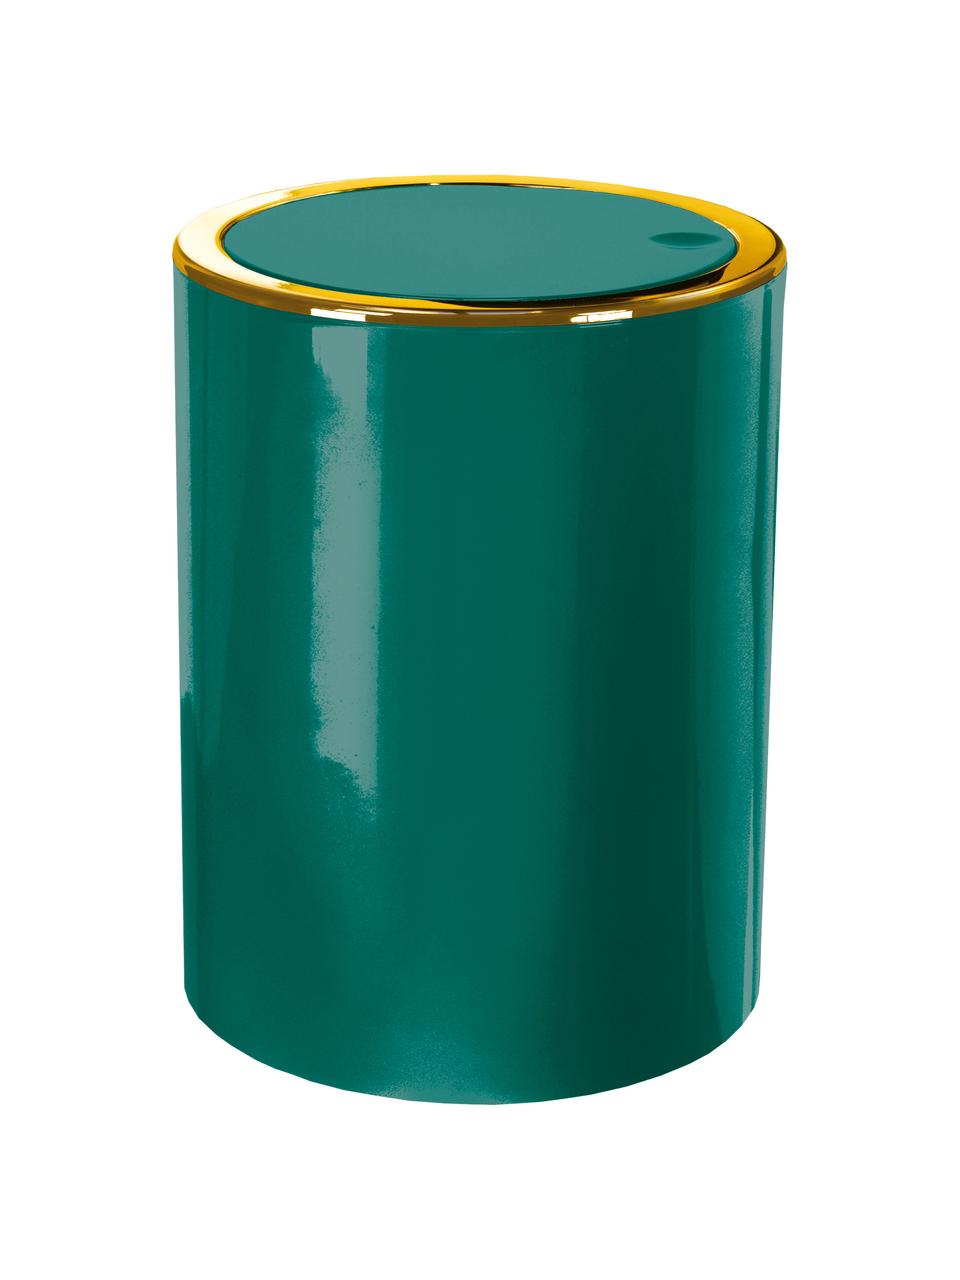 Papelera con tapadera abatible Golden Clap, Plástico, Verde esmeralda, 5 L